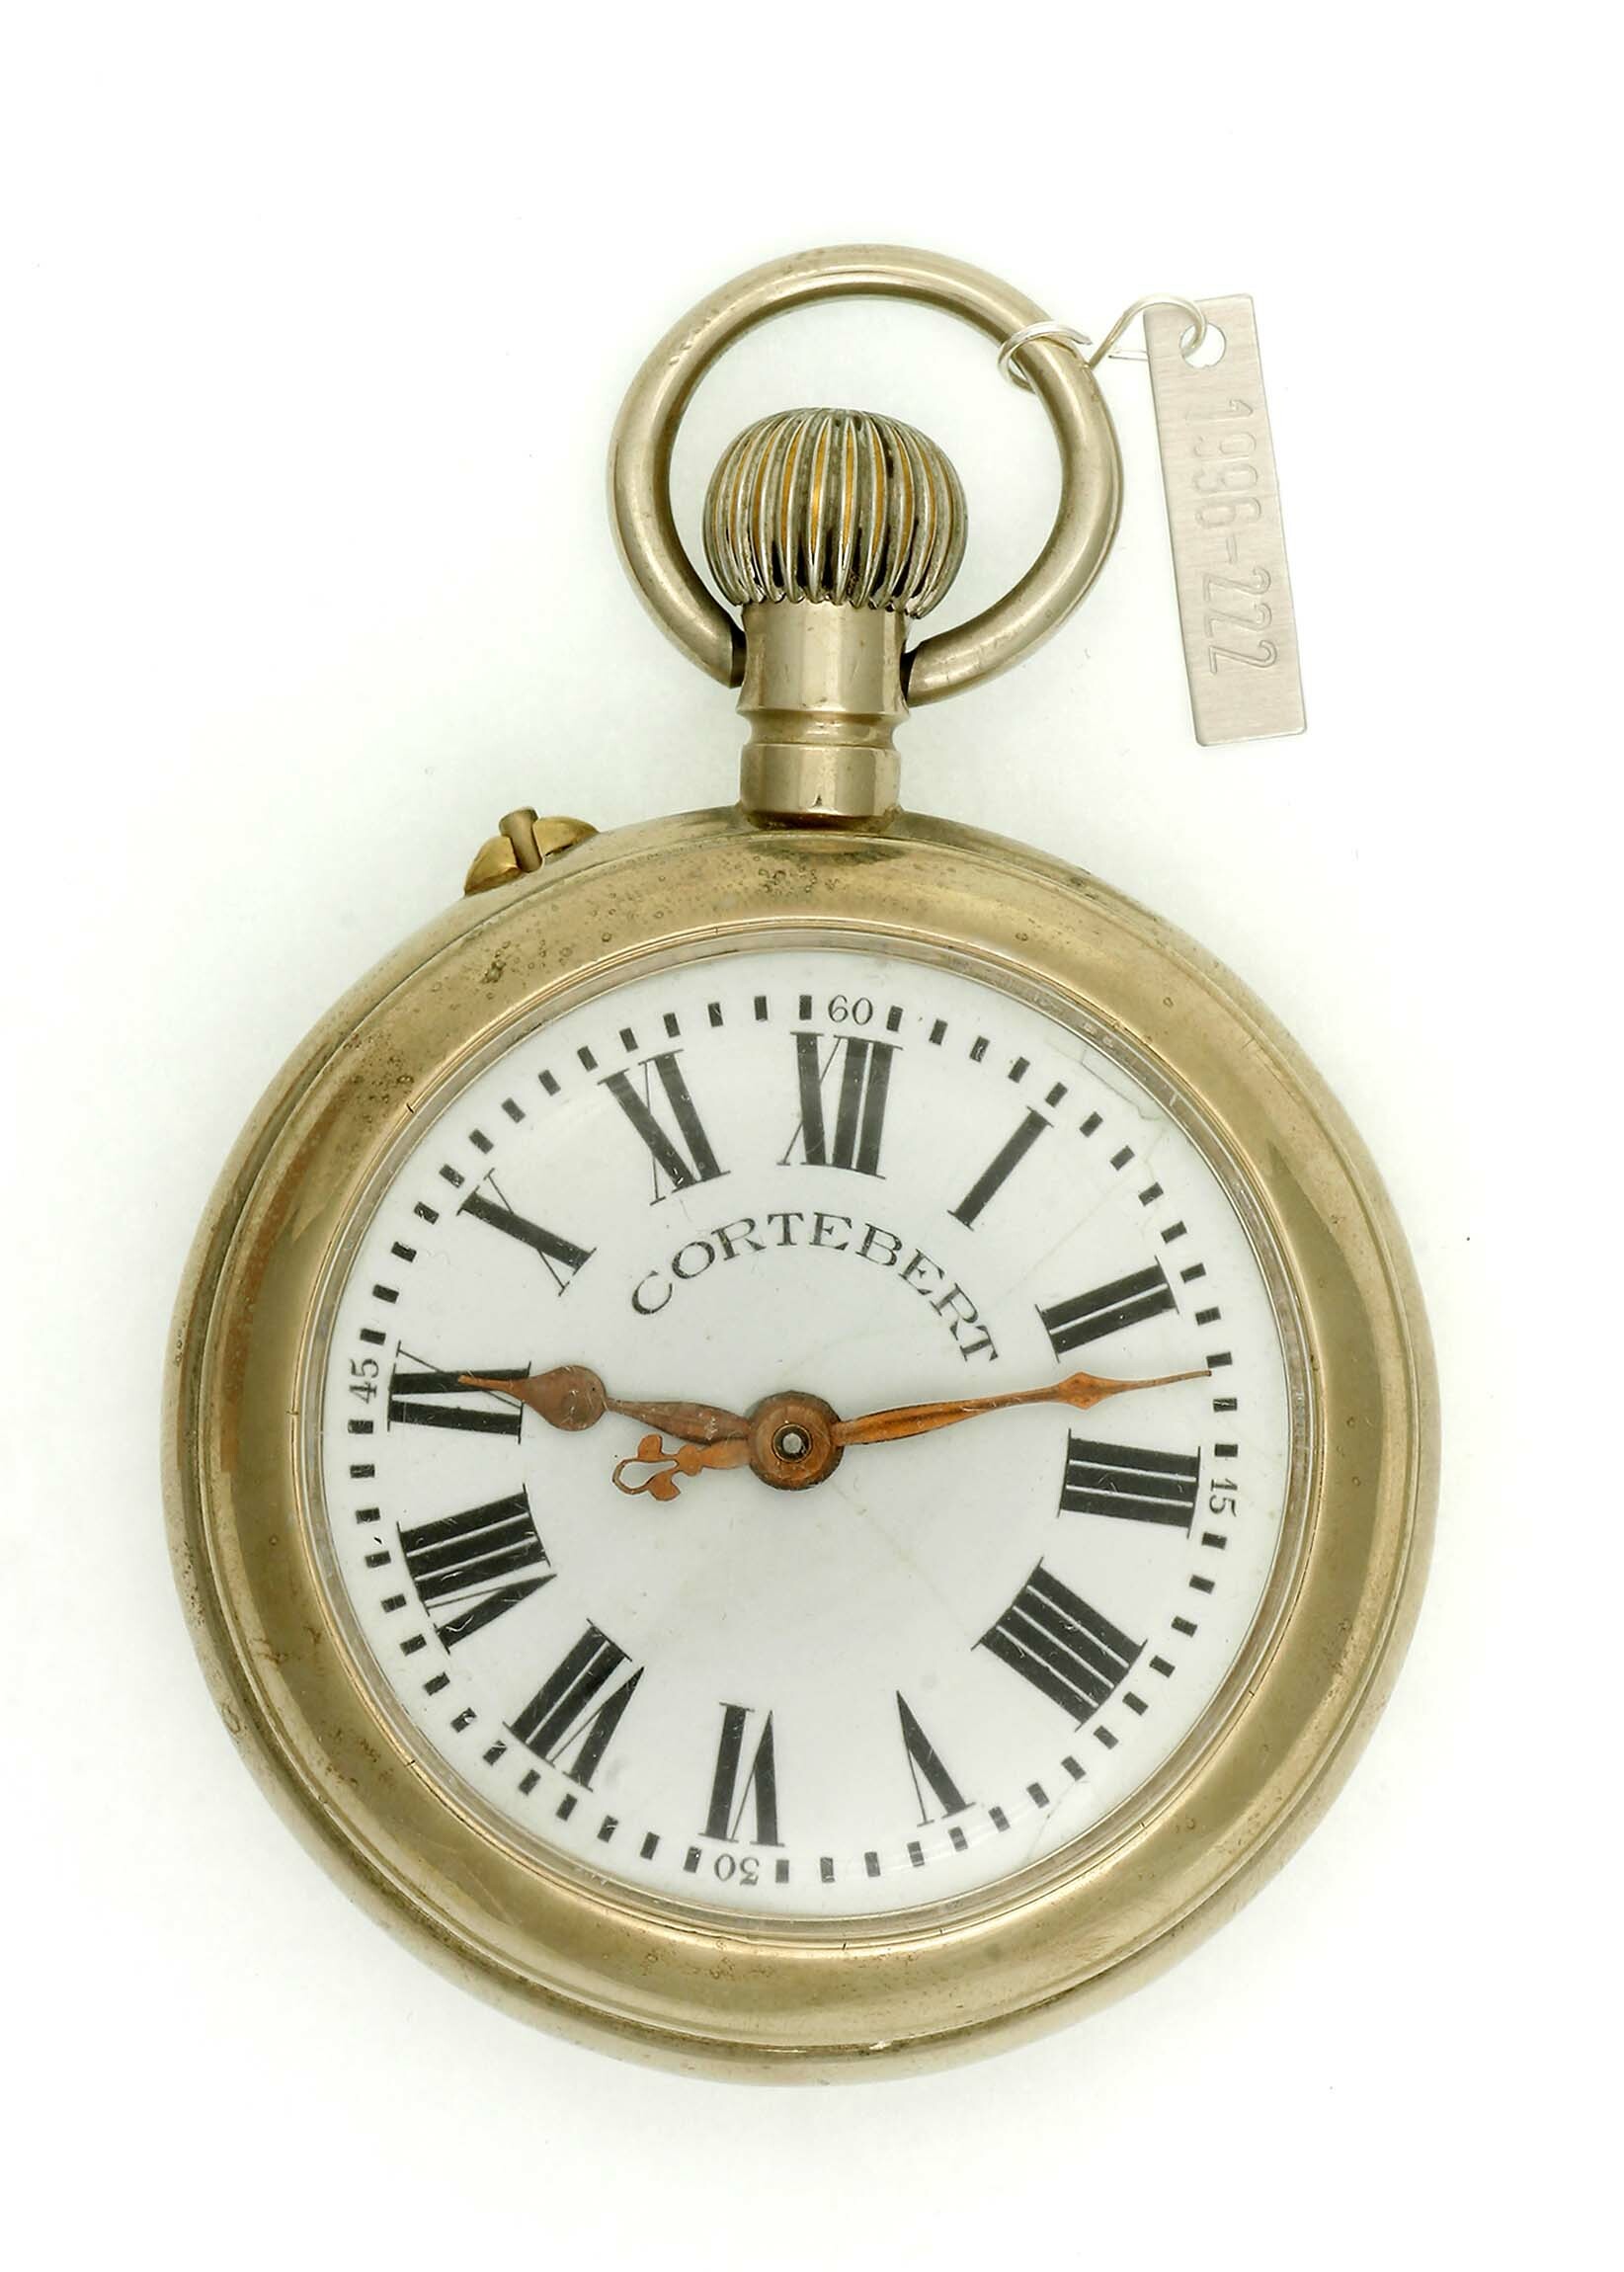 Taschenuhr, Cortébert Watch Co., Cortébert, um 1900 (Deutsches Uhrenmuseum CC BY-SA)